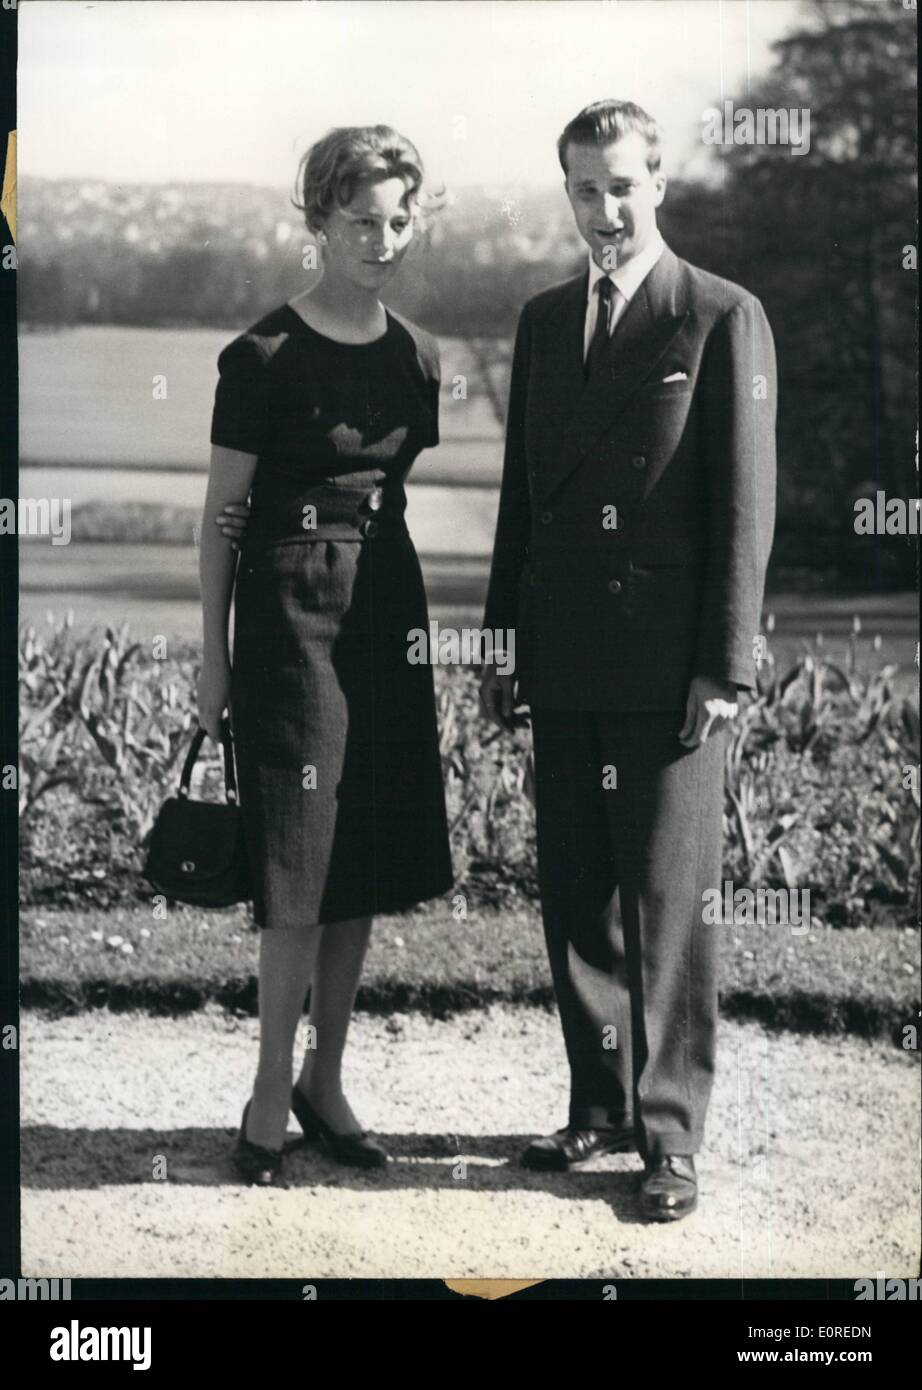 Avril 04, 1959 - Prince Albert de liège d'épouser une princesse italienne. La photo montre la Princesse Dona Paola Di Calabria de l'Italie et le Prince Albert de Liège, dont l'engagement officiel a été annoncé par le Palais Royal de Bruxelles, photographiée dans les jardins du château de Laeken hier. Banque D'Images